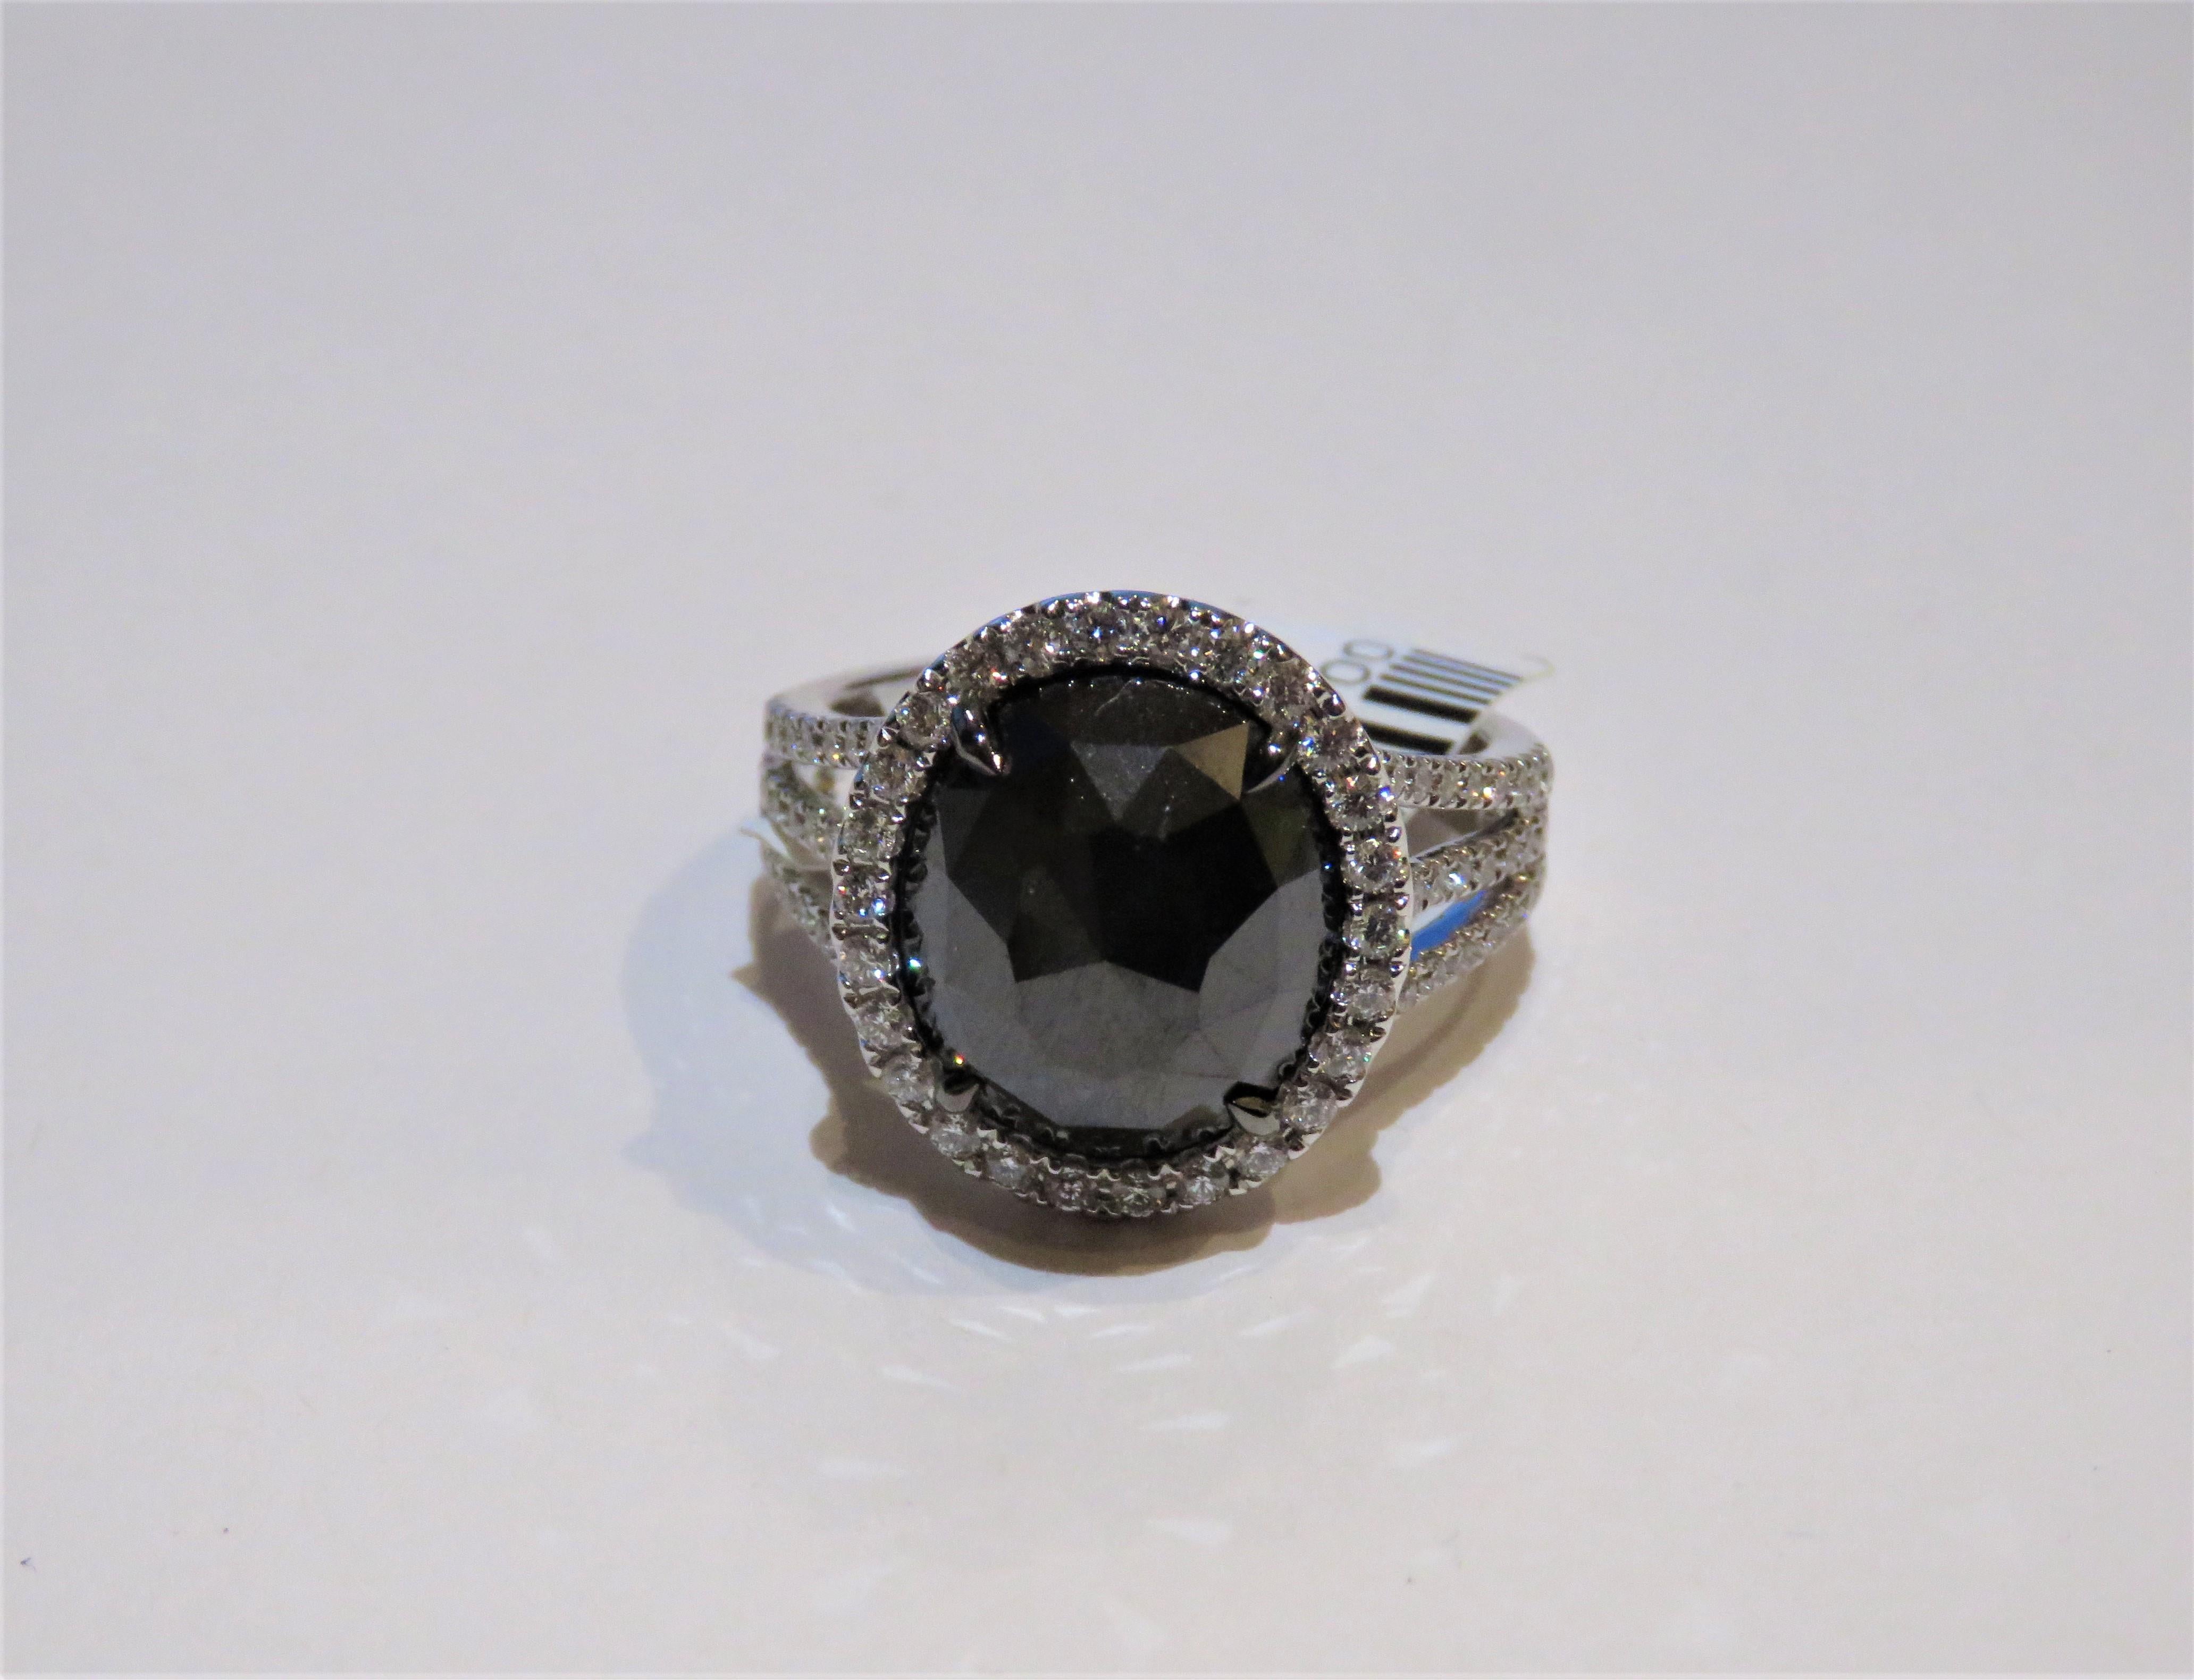 Der folgende Artikel, den wir anbieten, ist dieser extrem seltene schöne 18KT Gold feine seltene große Fancy Black Diamond Ring. Dieser prächtige Ring besteht aus einem seltenen, großen, facettierten, ovalen schwarzen Diamanten, umgeben von einem